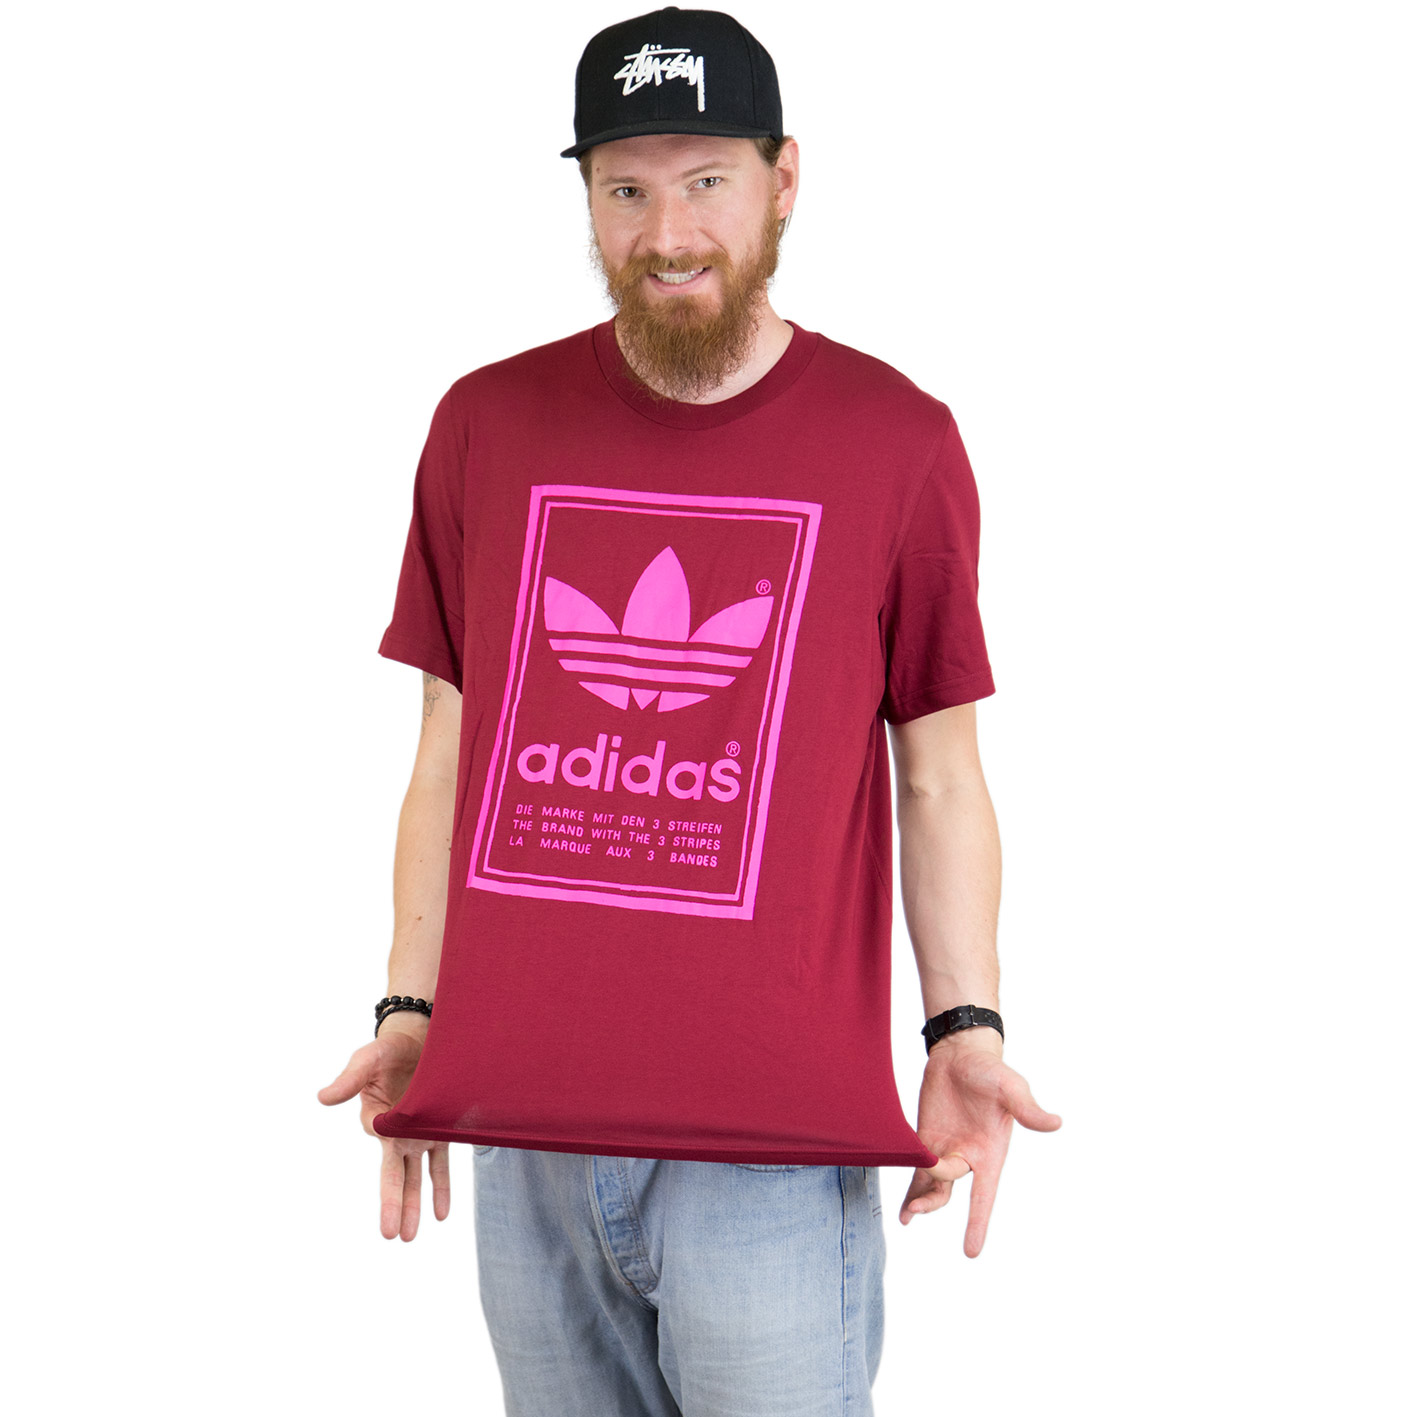 Adidas Originals T-Shirt Vintage weinrot - hier bestellen!